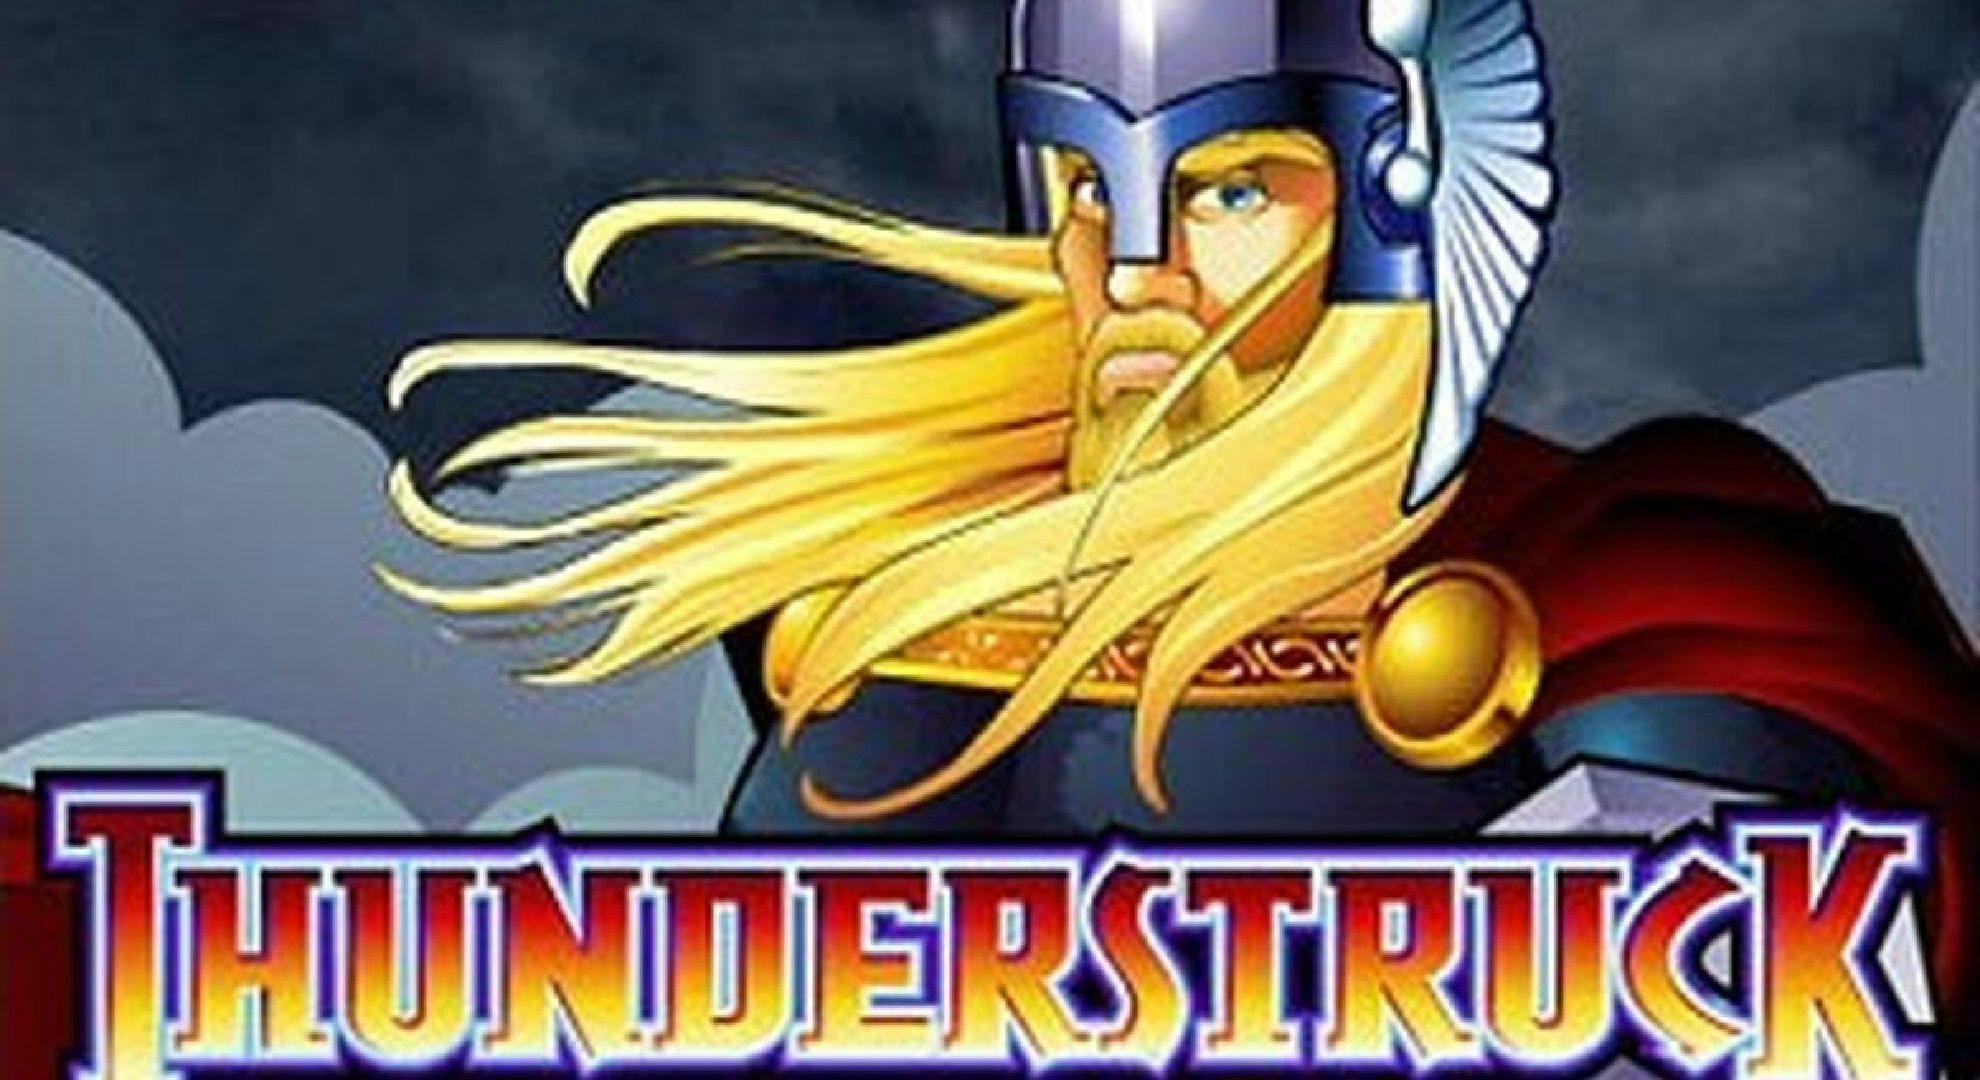 Thunderstruck Slot Online Free Play